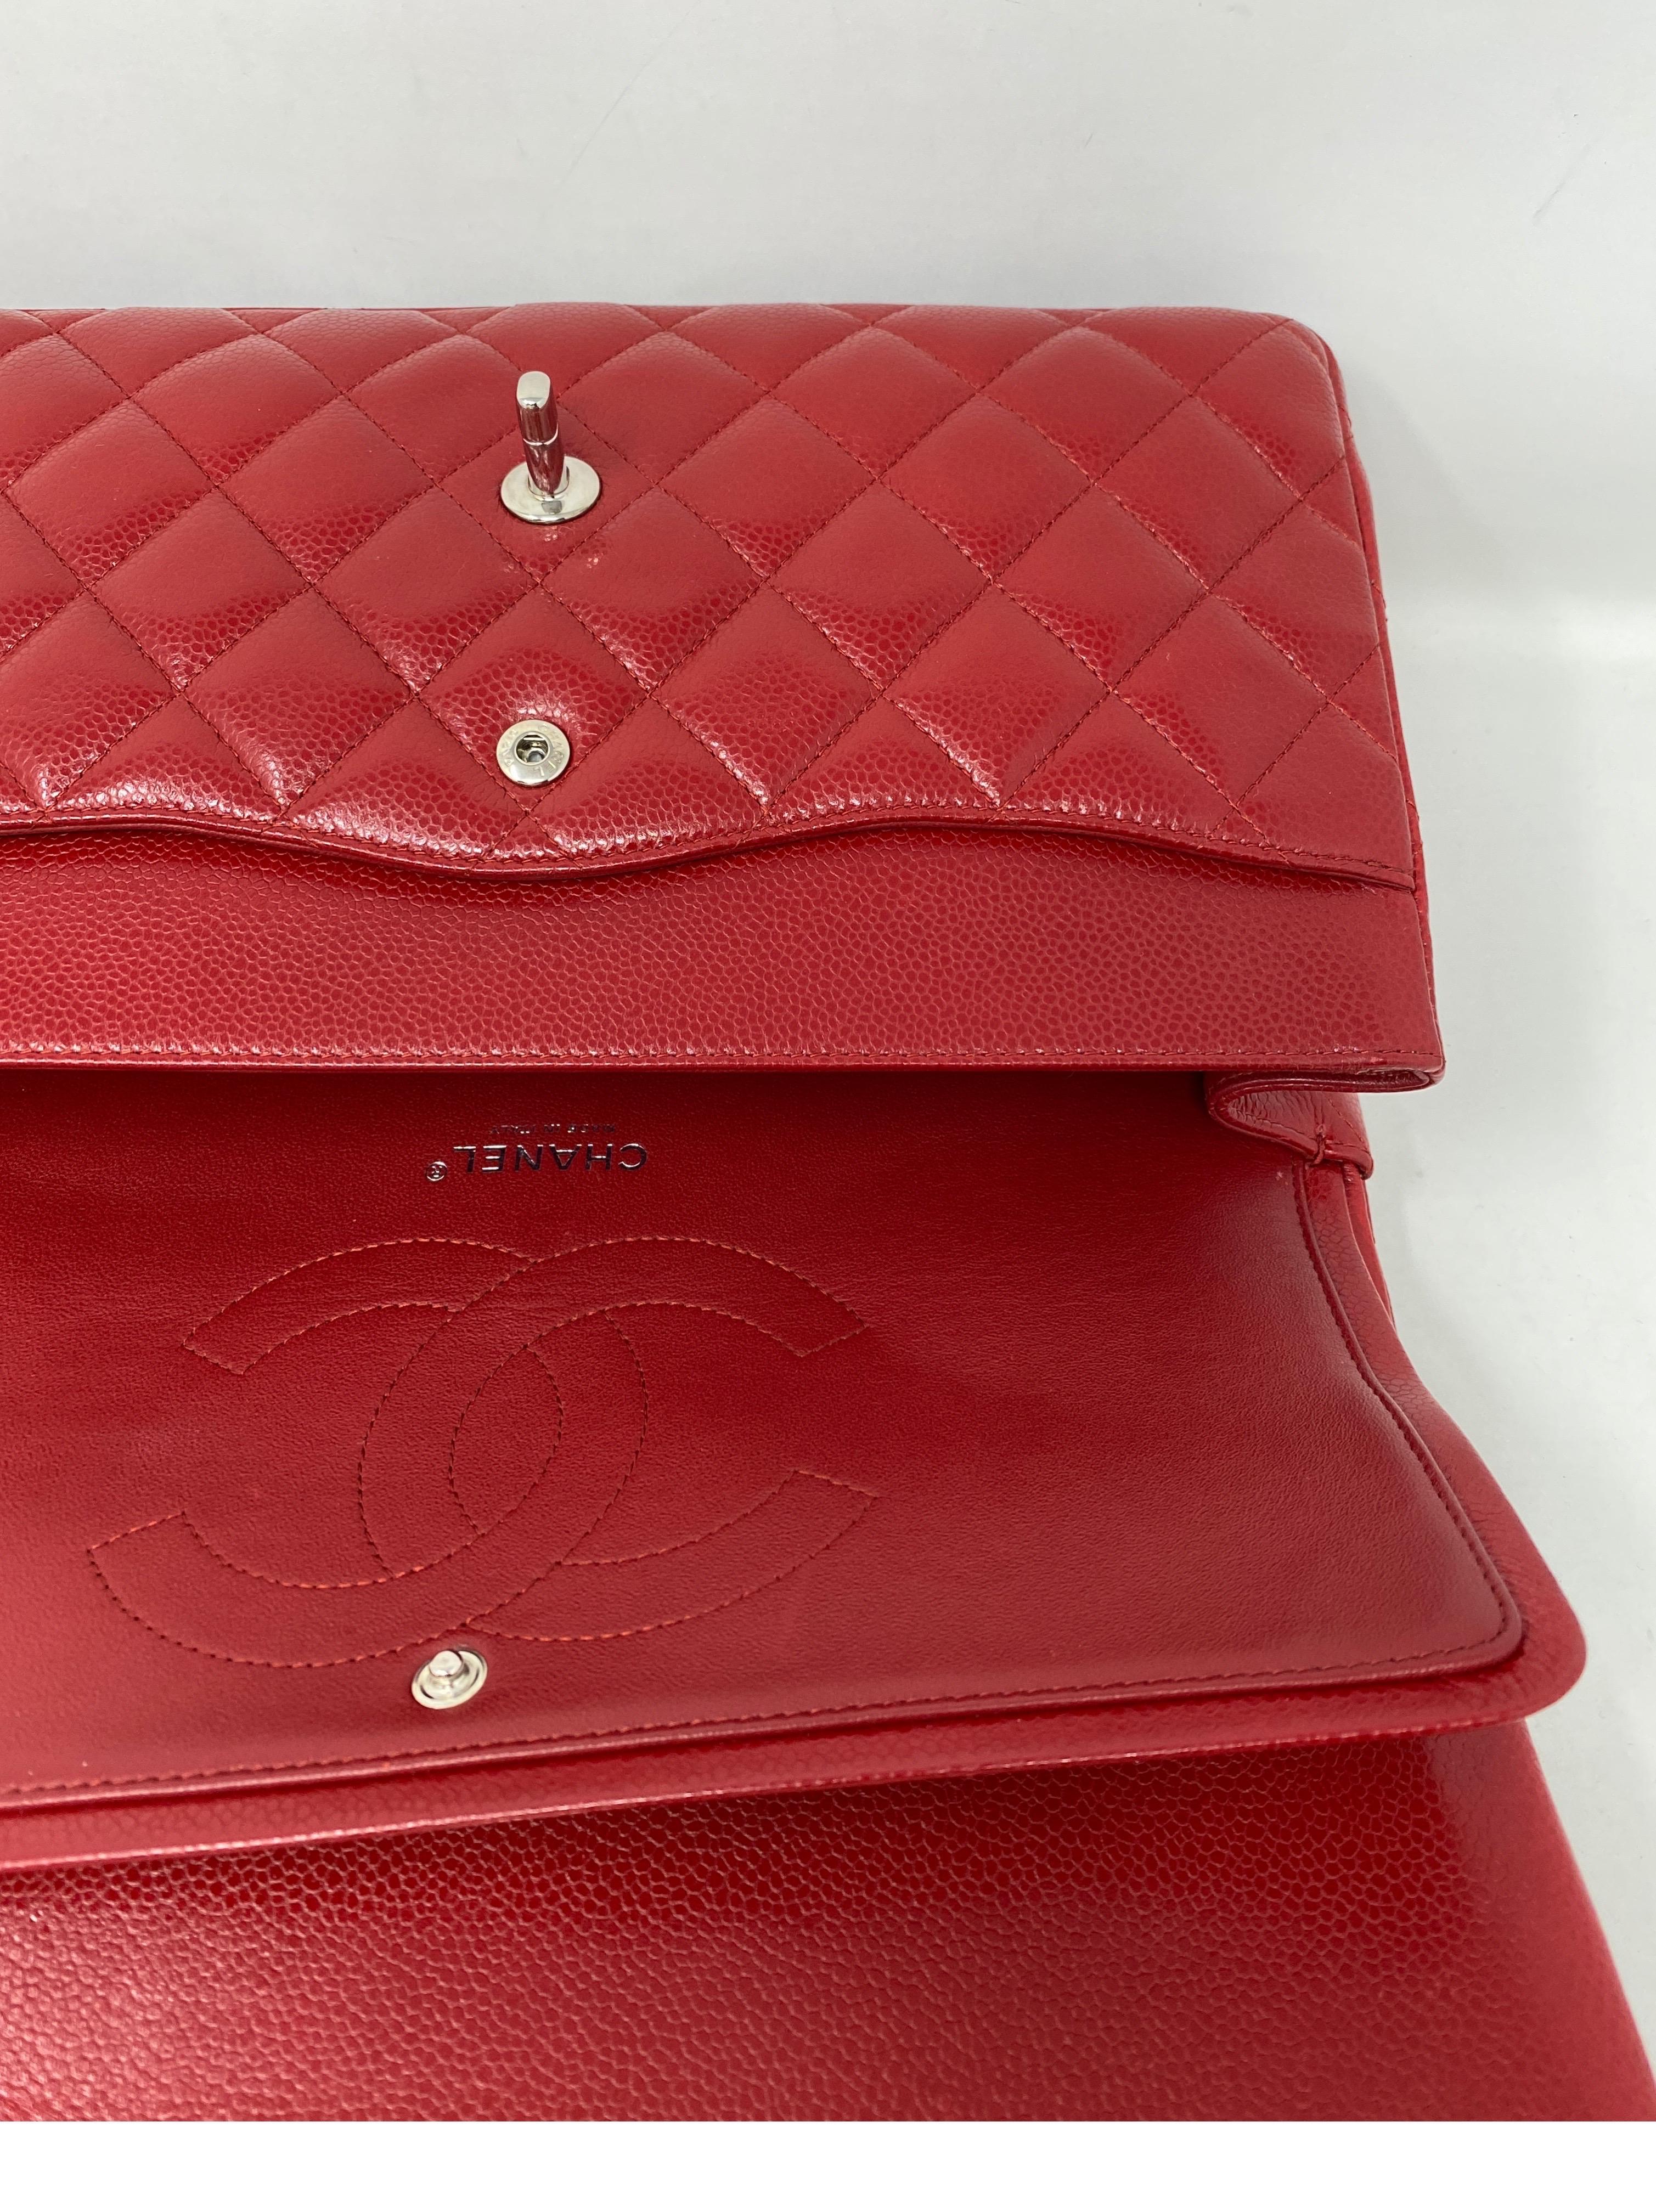 Chanel Red Jumbo Double Flap Bag  6